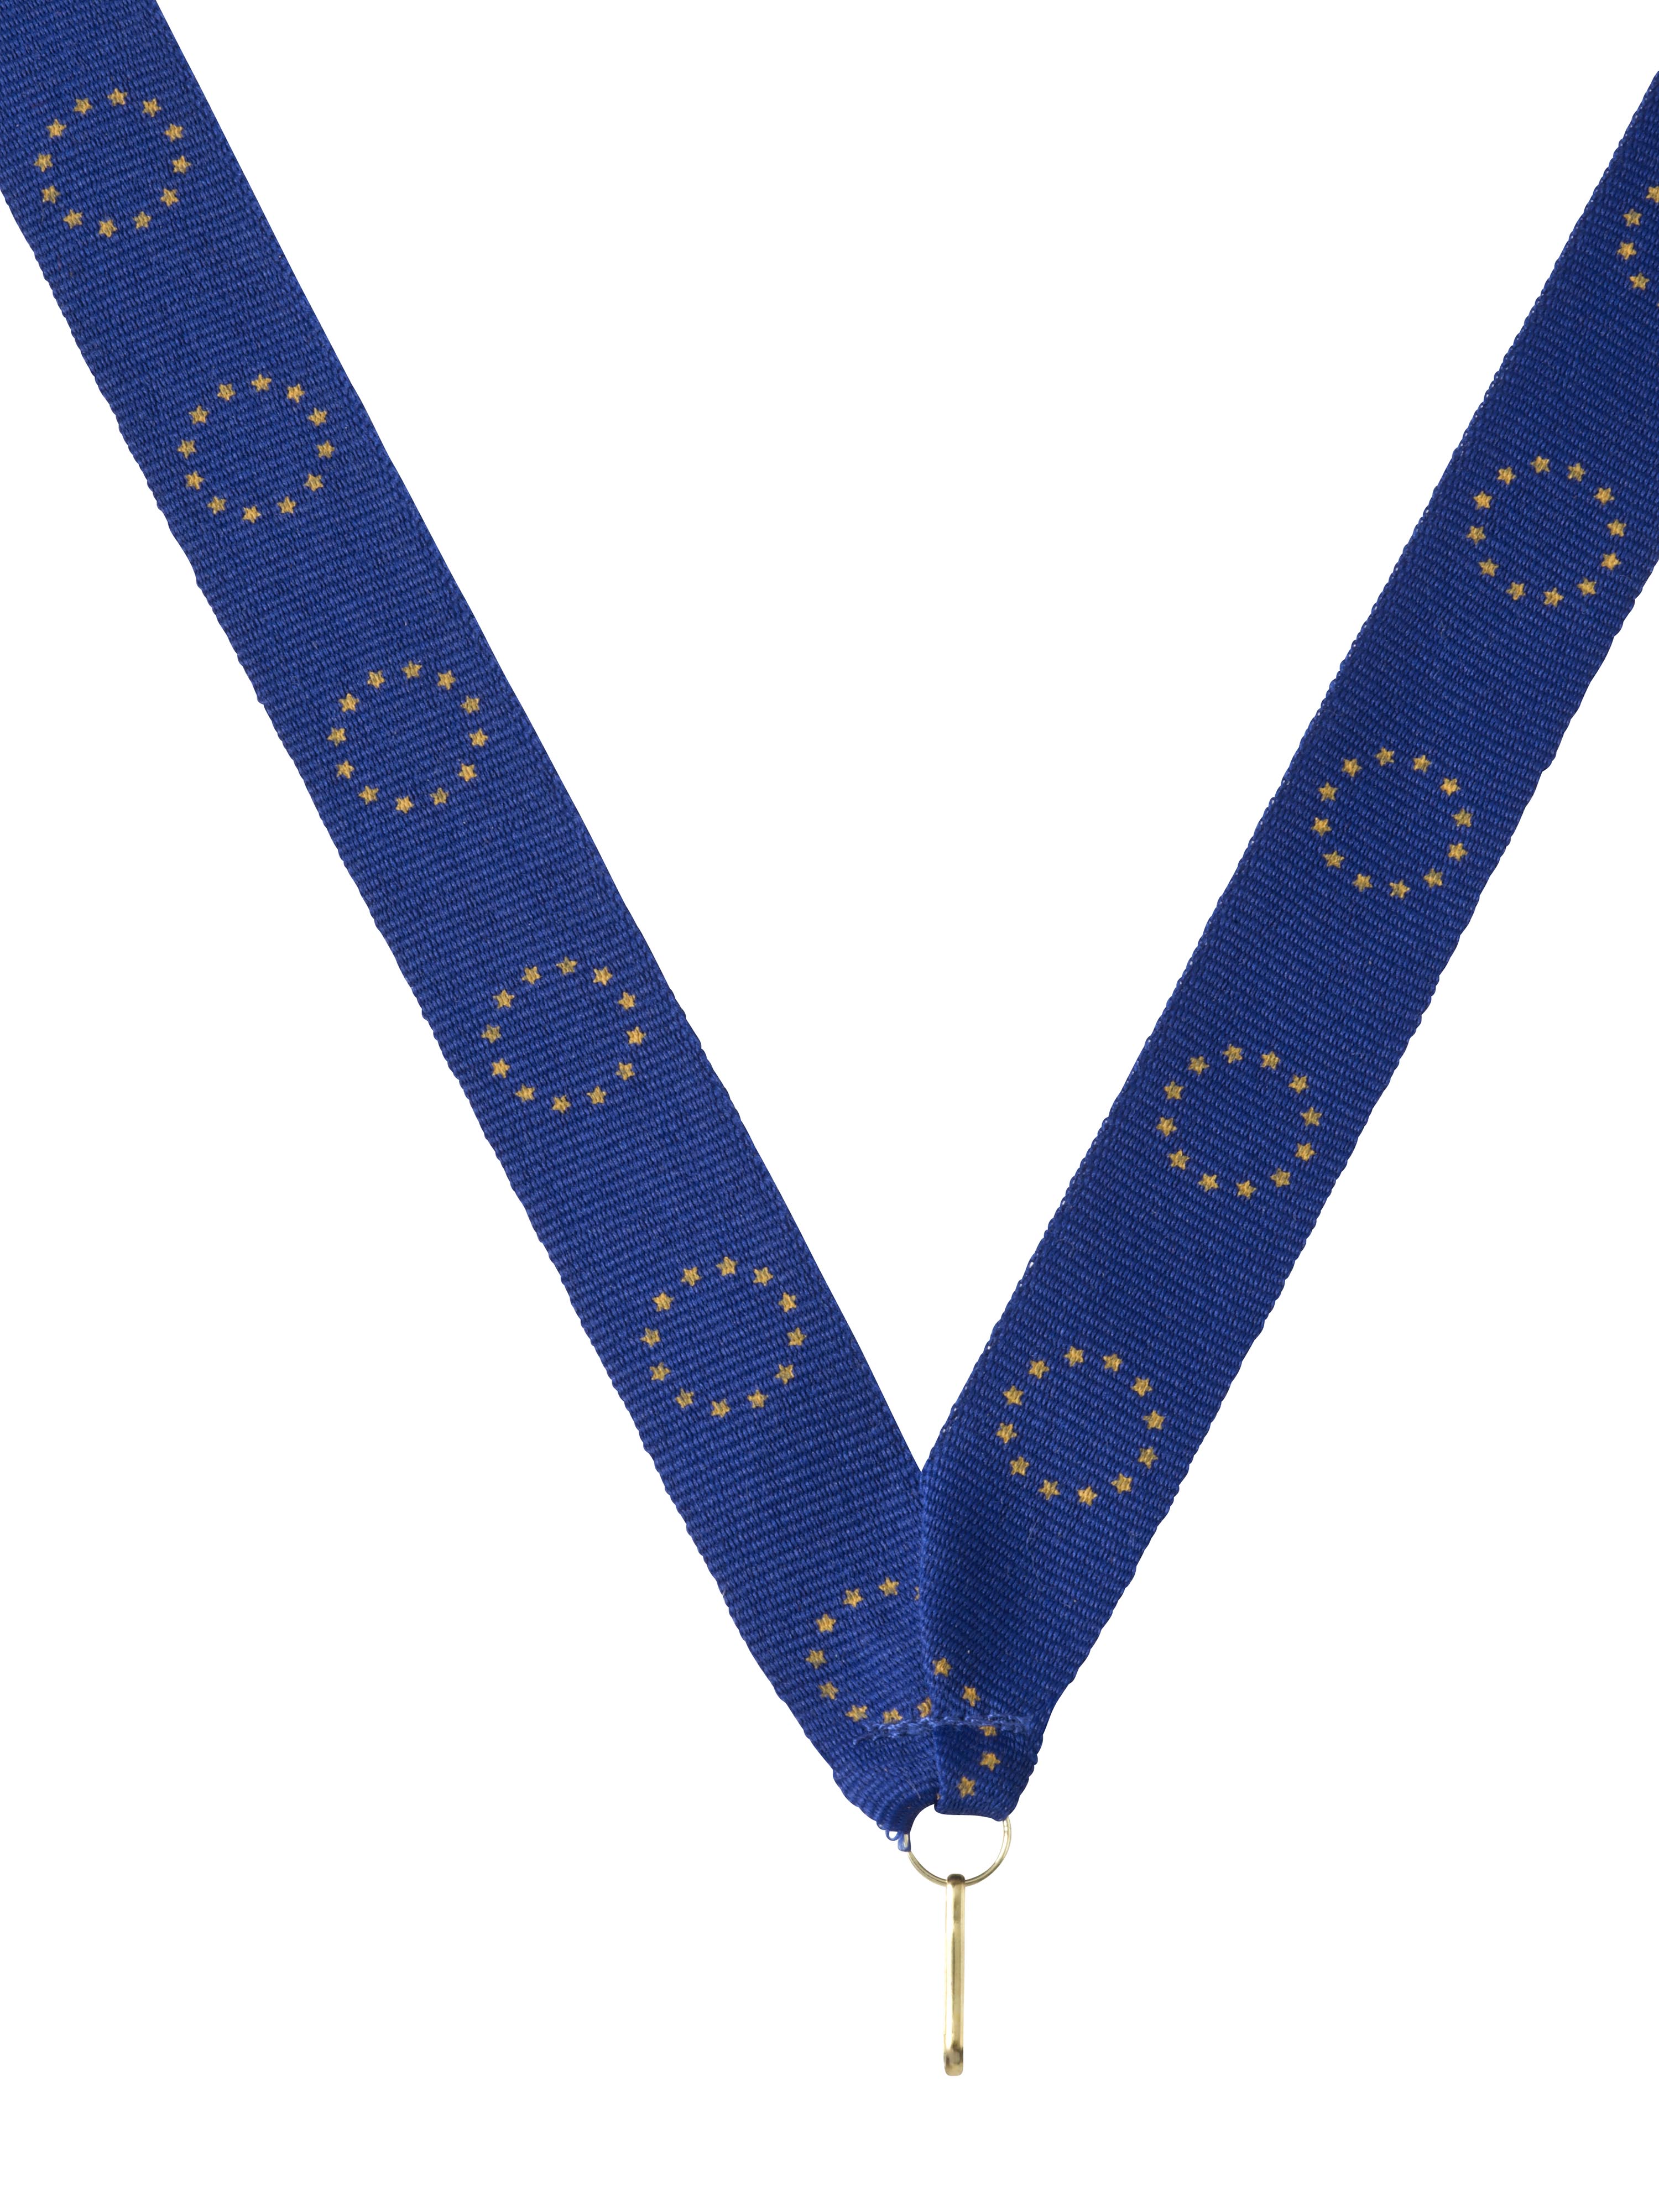 Medaillenband Europa